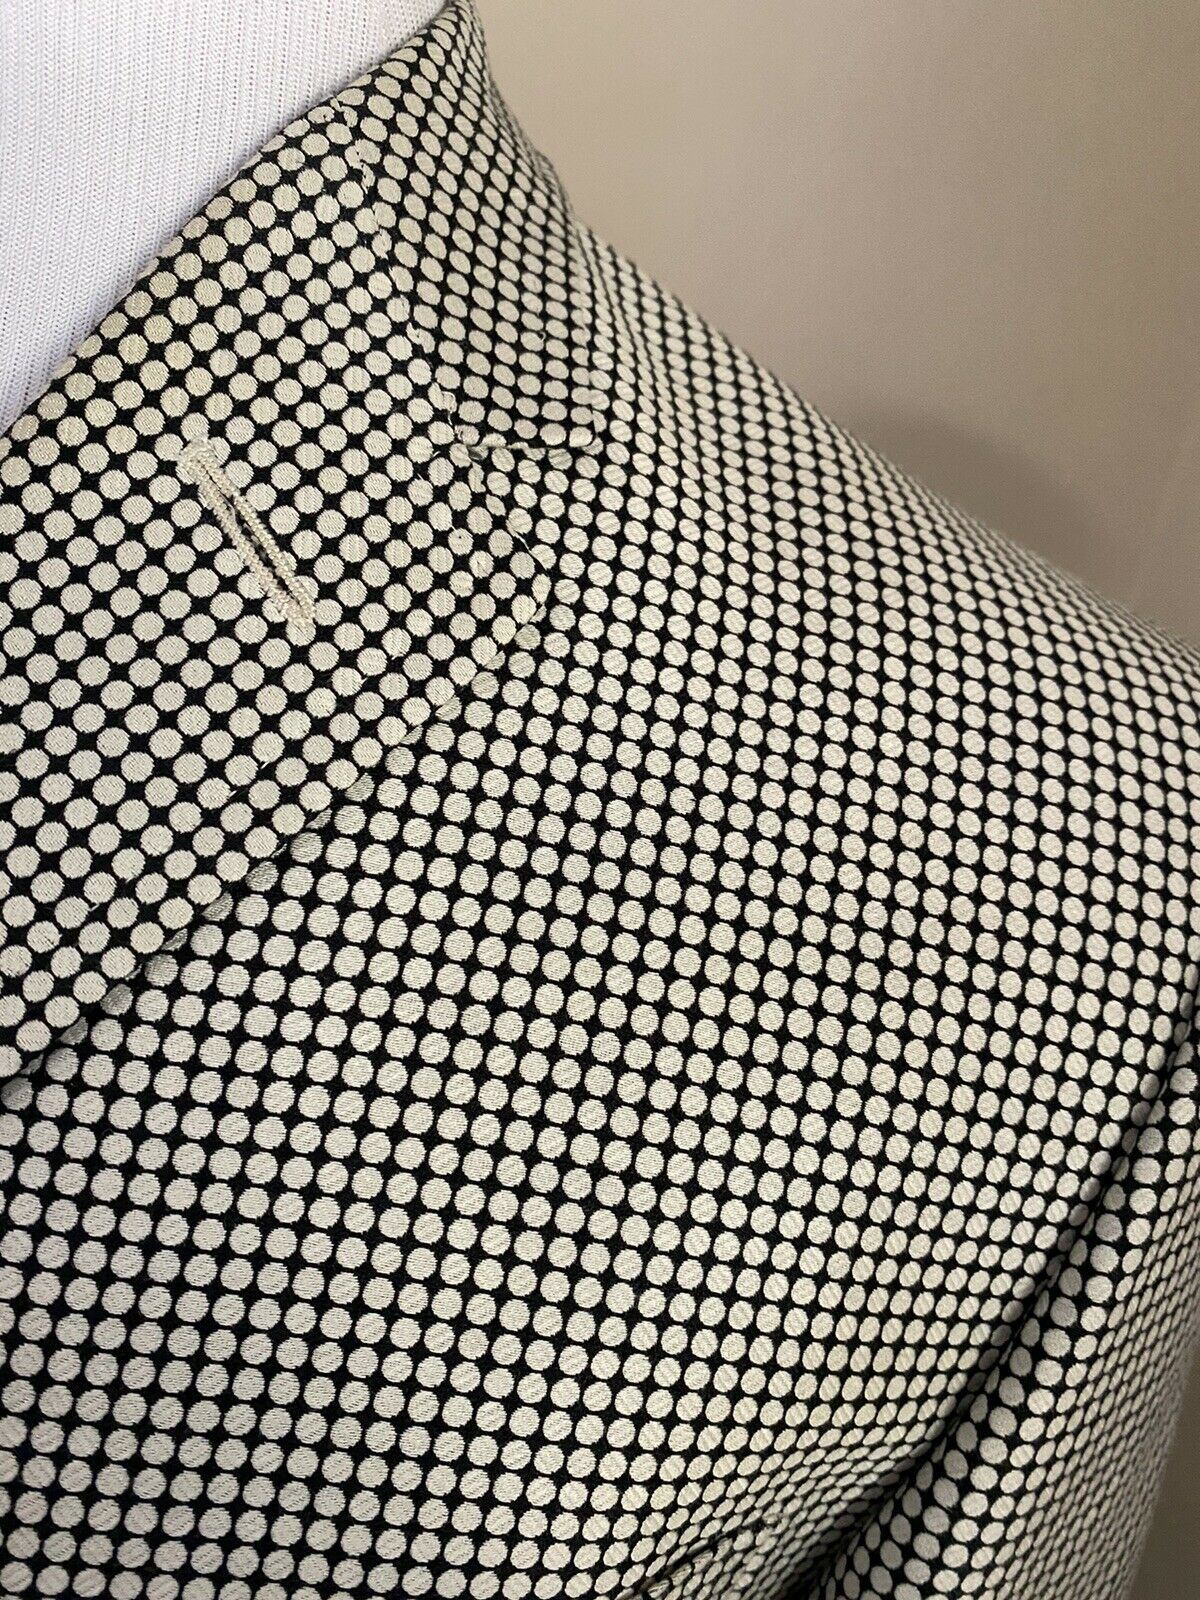 Мужской костюм приталенного силуэта Gucci Tom Ford, белый/черный, белый/черный, $5400, 42R, США (52R, ЕС)